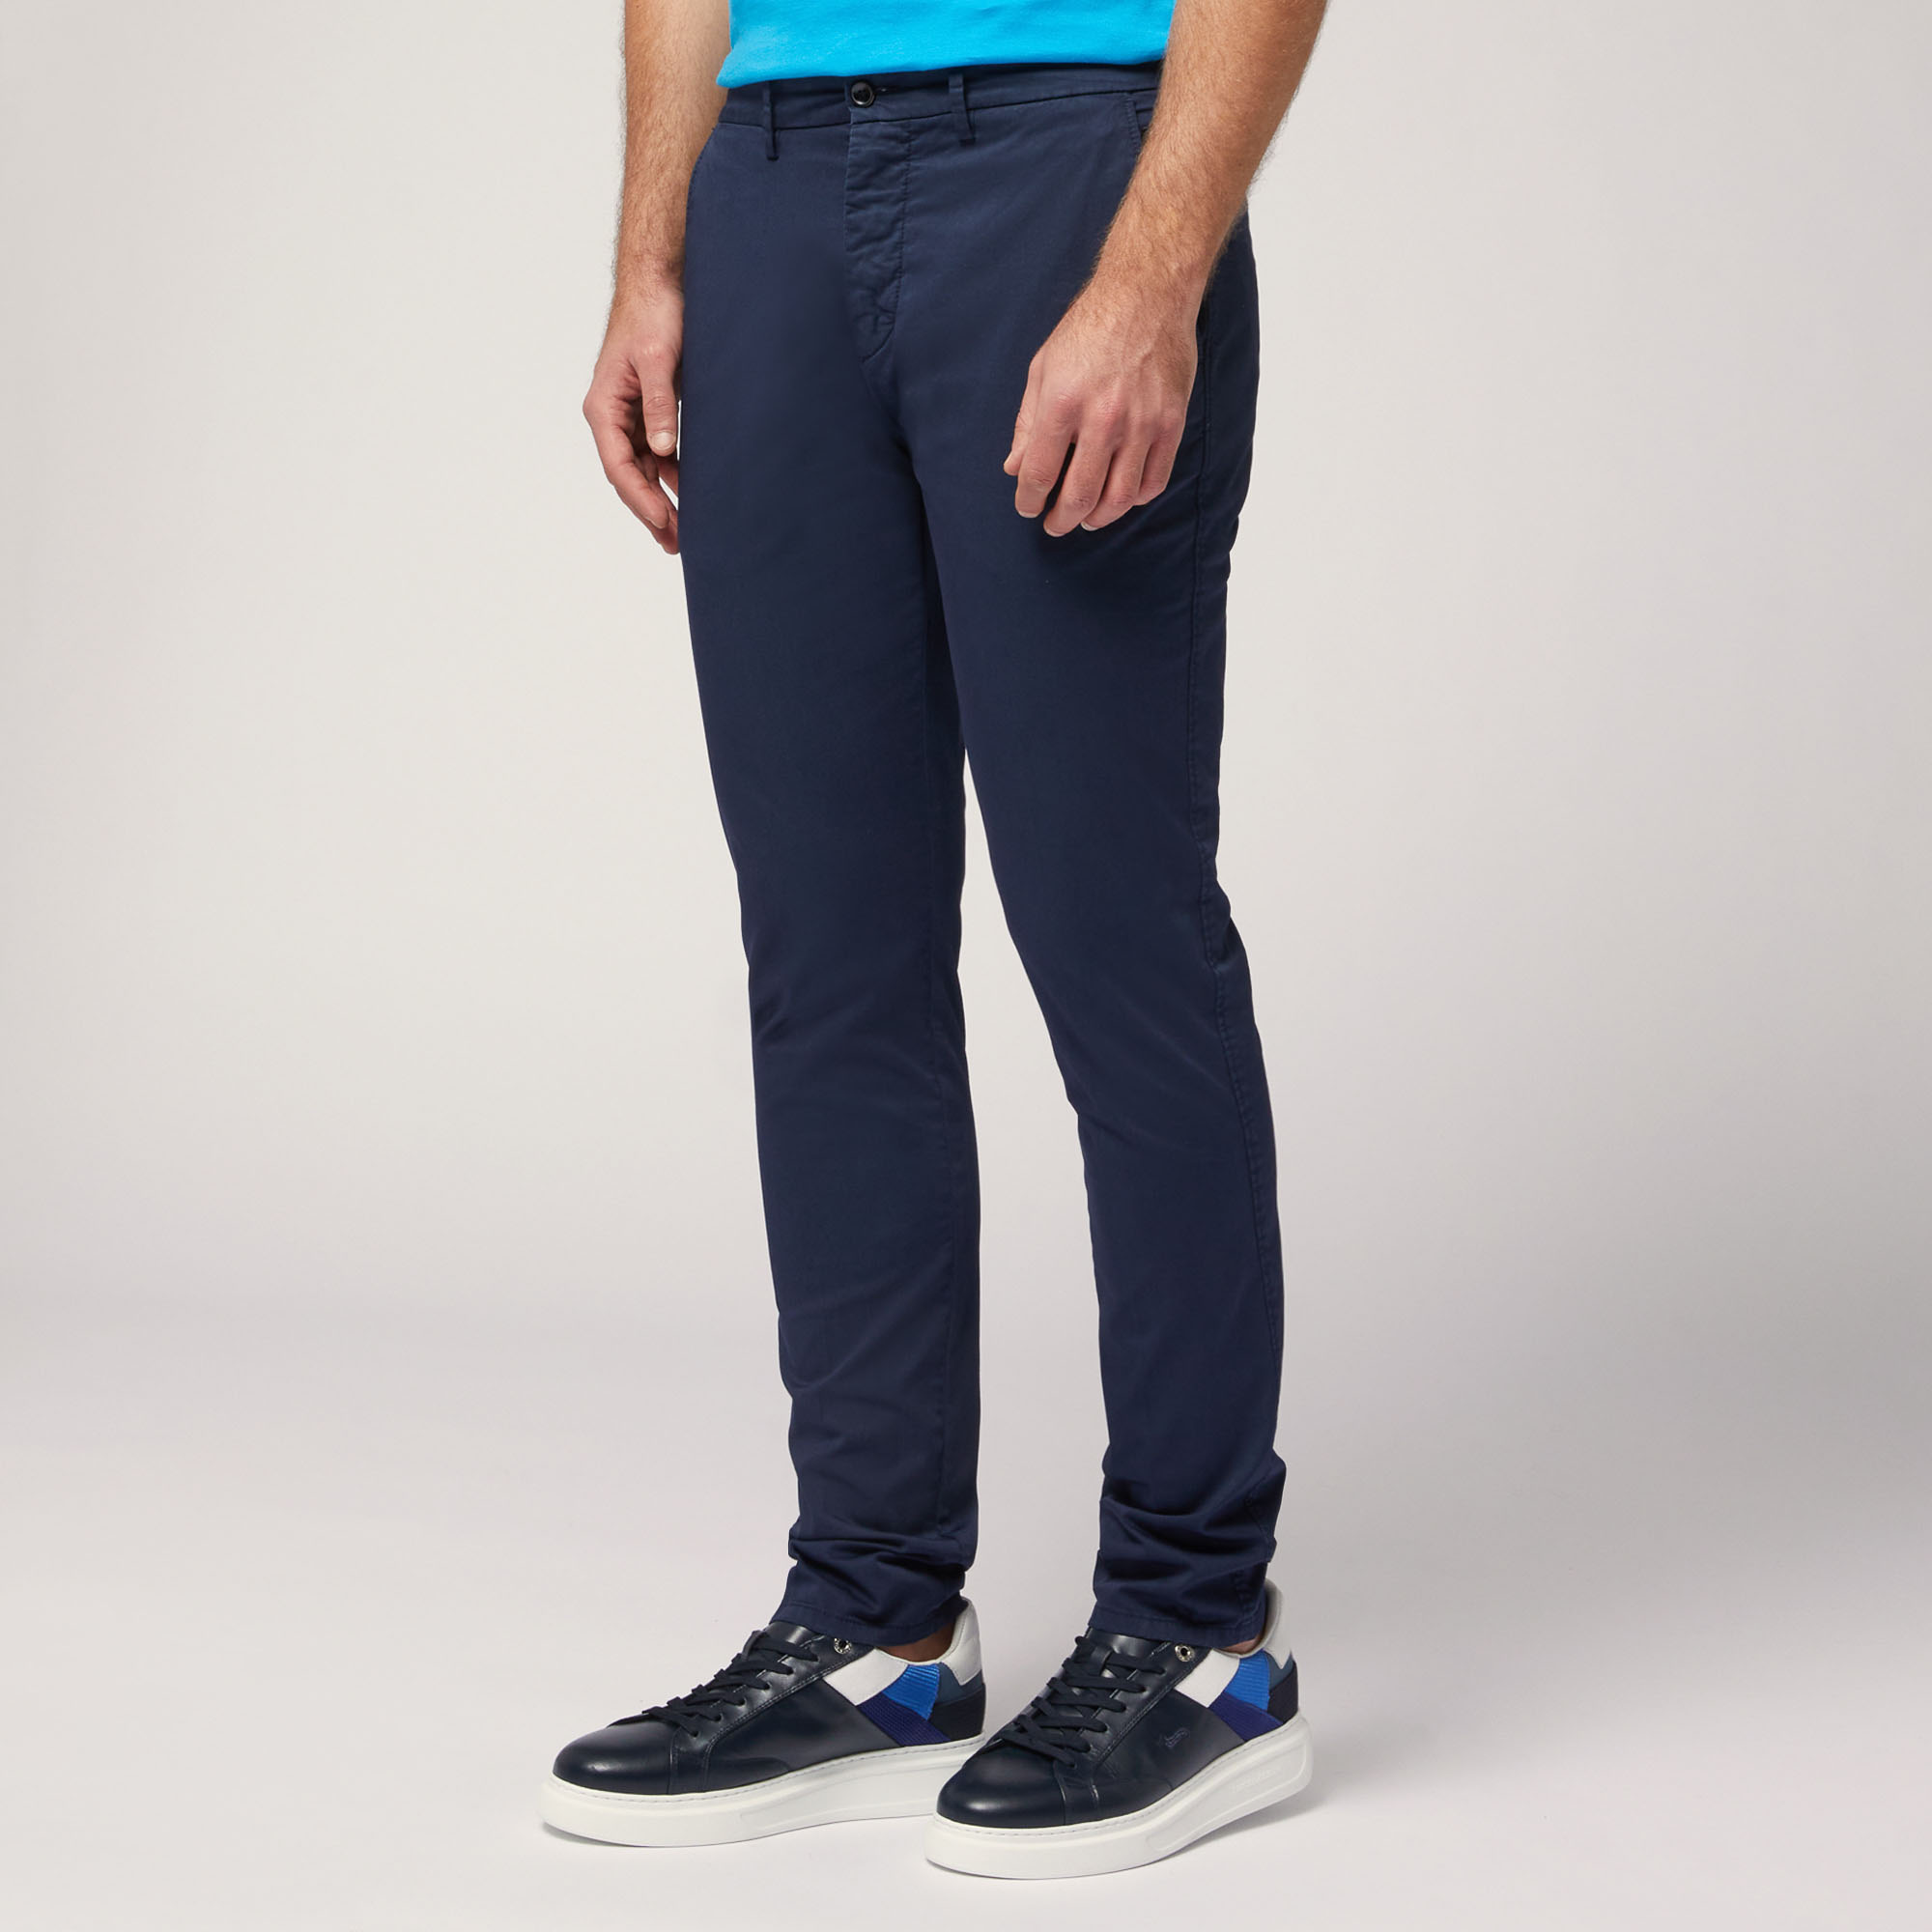 Pantaloni Chino Narrow Fit, Azul, large